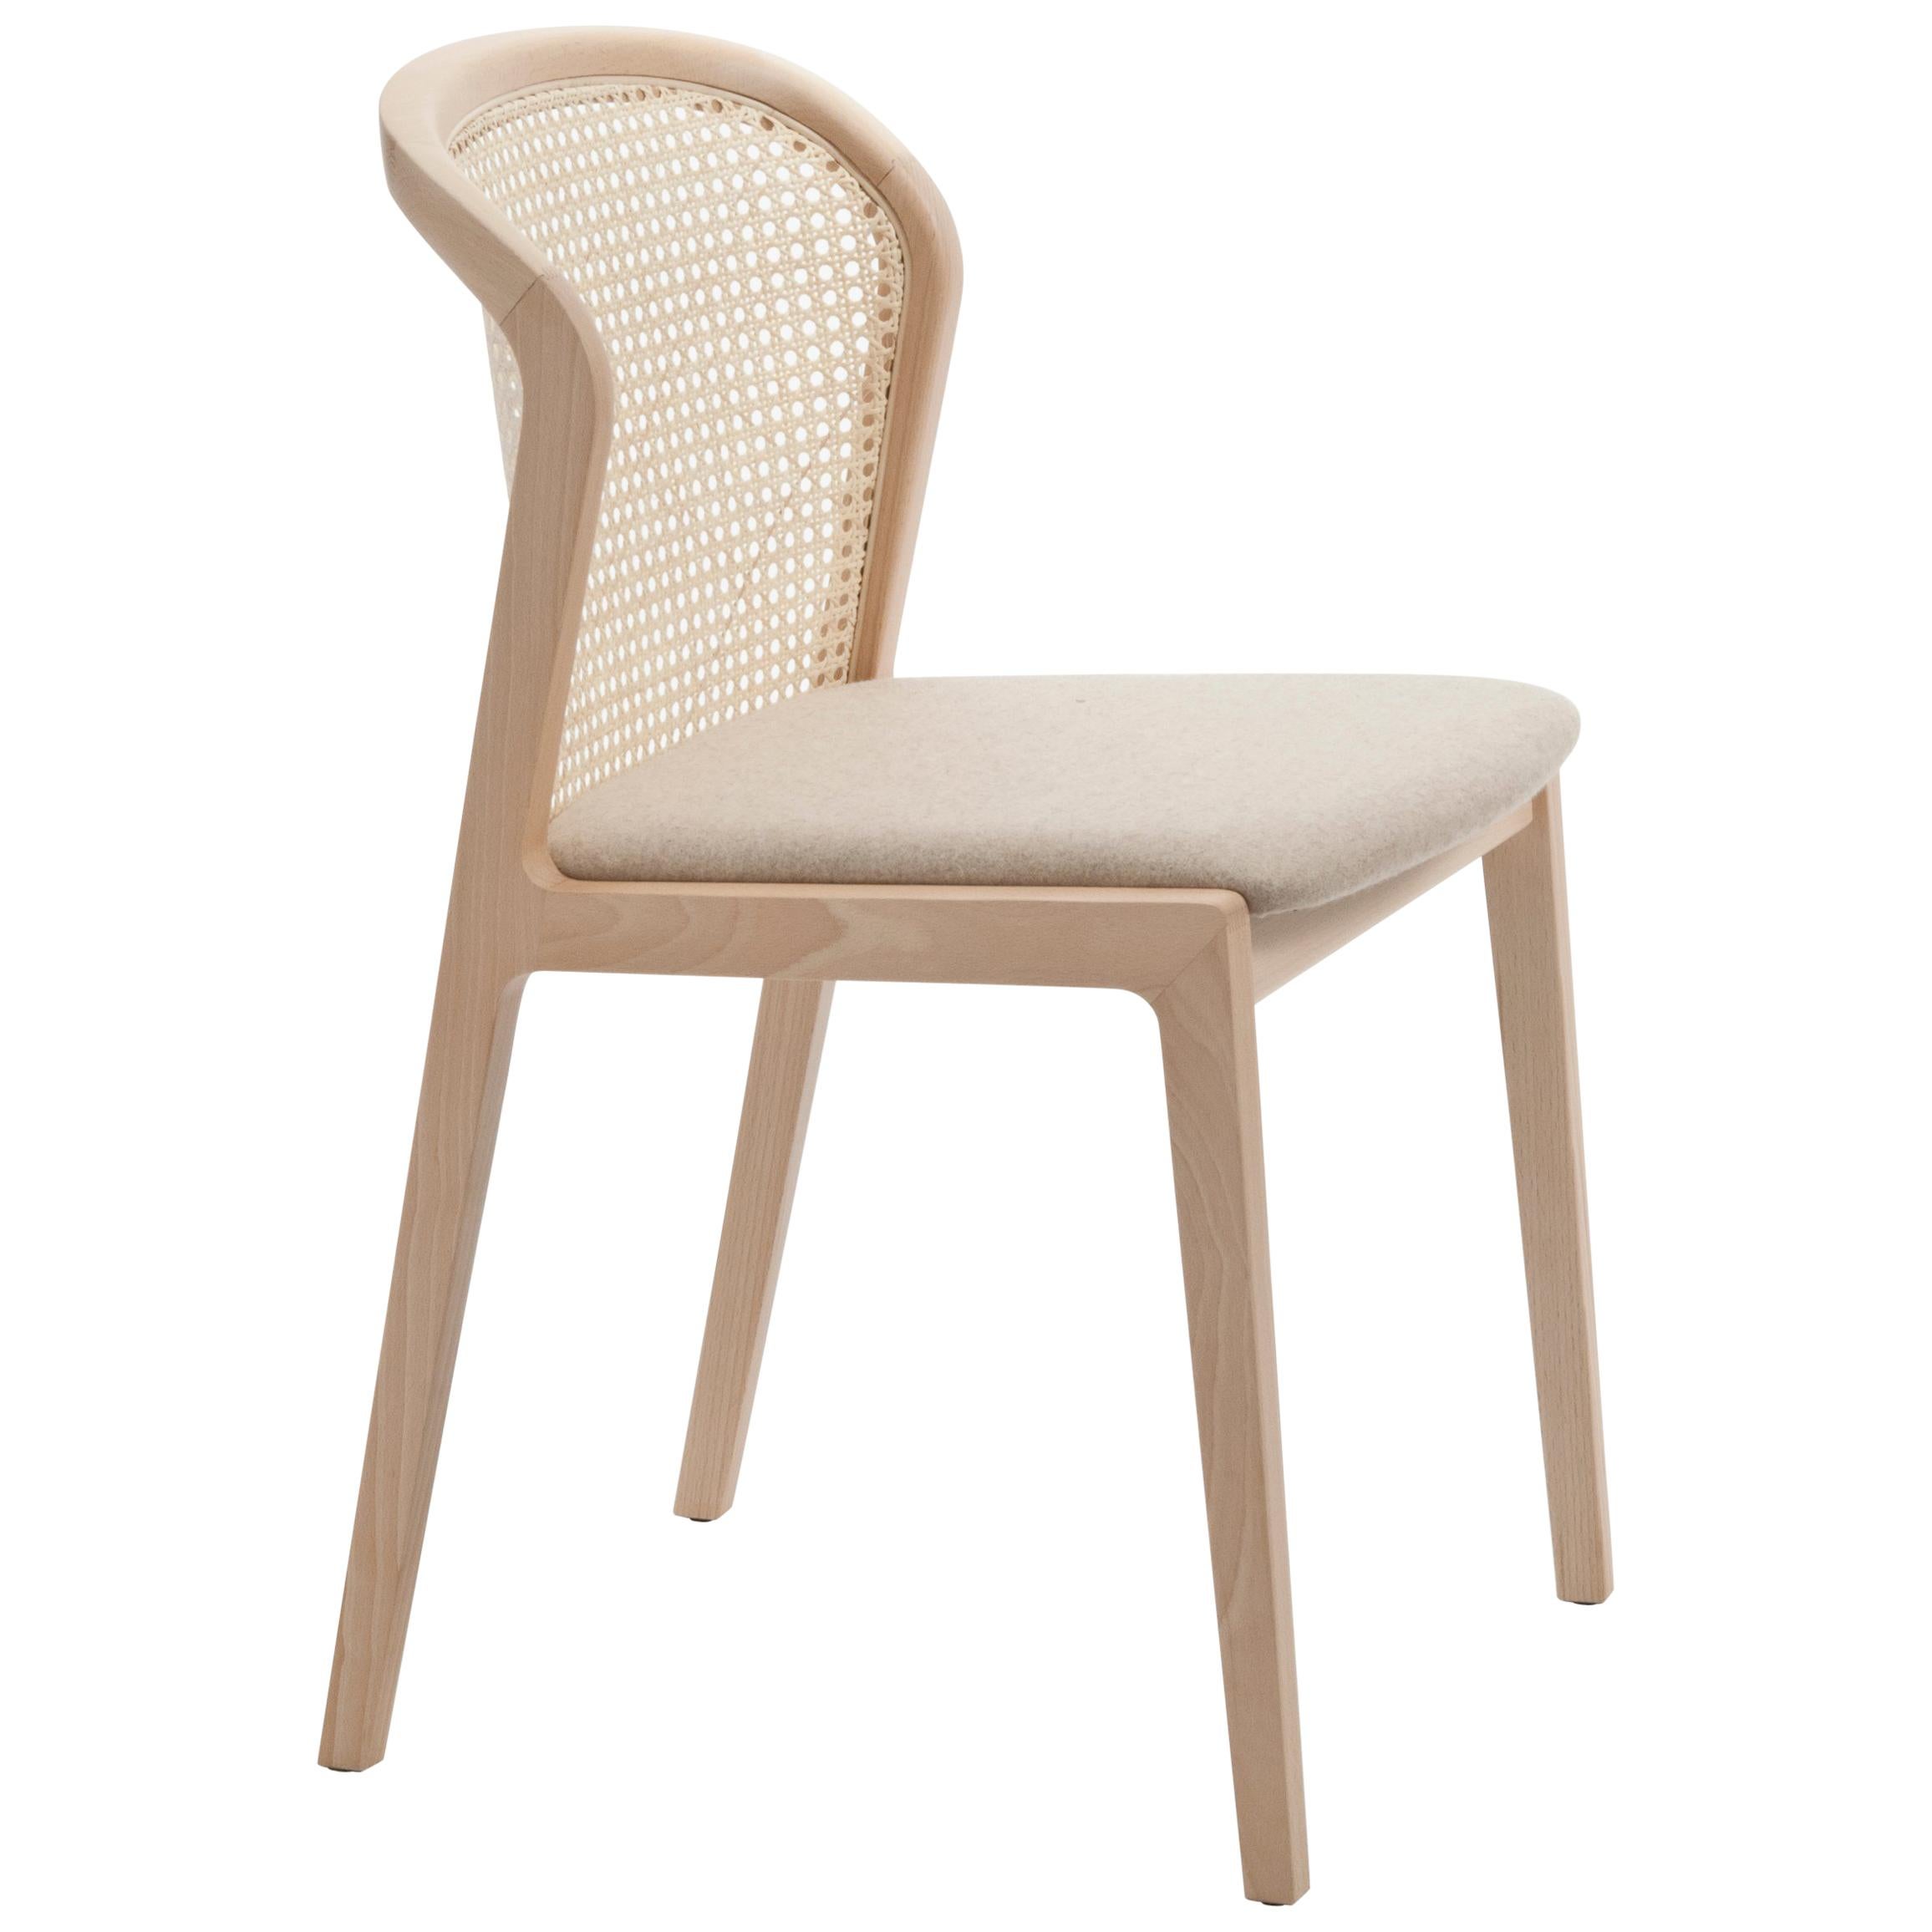 Vienna est une chaise extraordinairement confortable et élégante conçue par Emmanuel Gallina qui aime citer Brancusi en disant que 